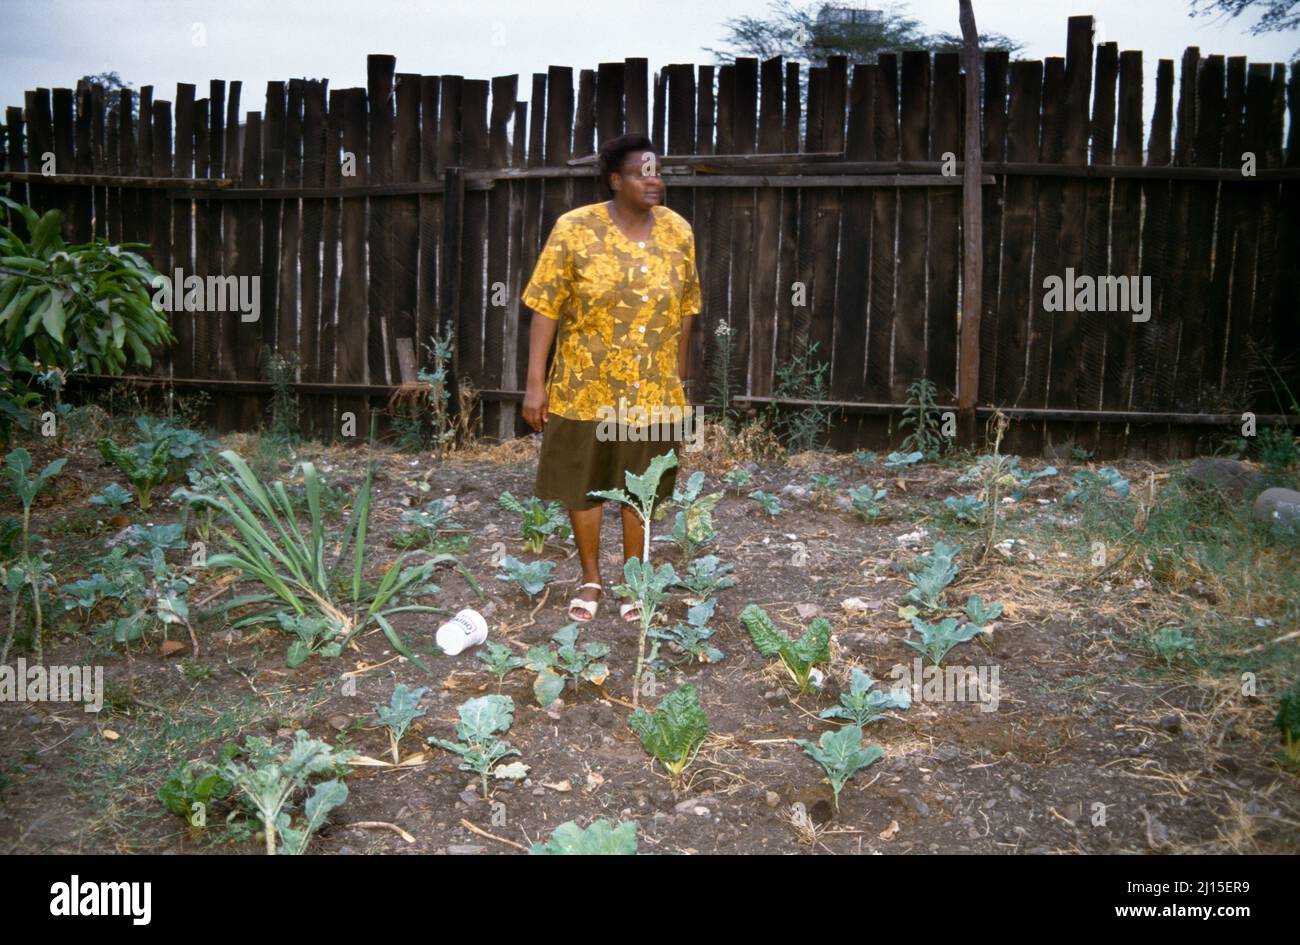 Nairobi Kenya Woman Amongst Vegetables In Garden Stock Photo